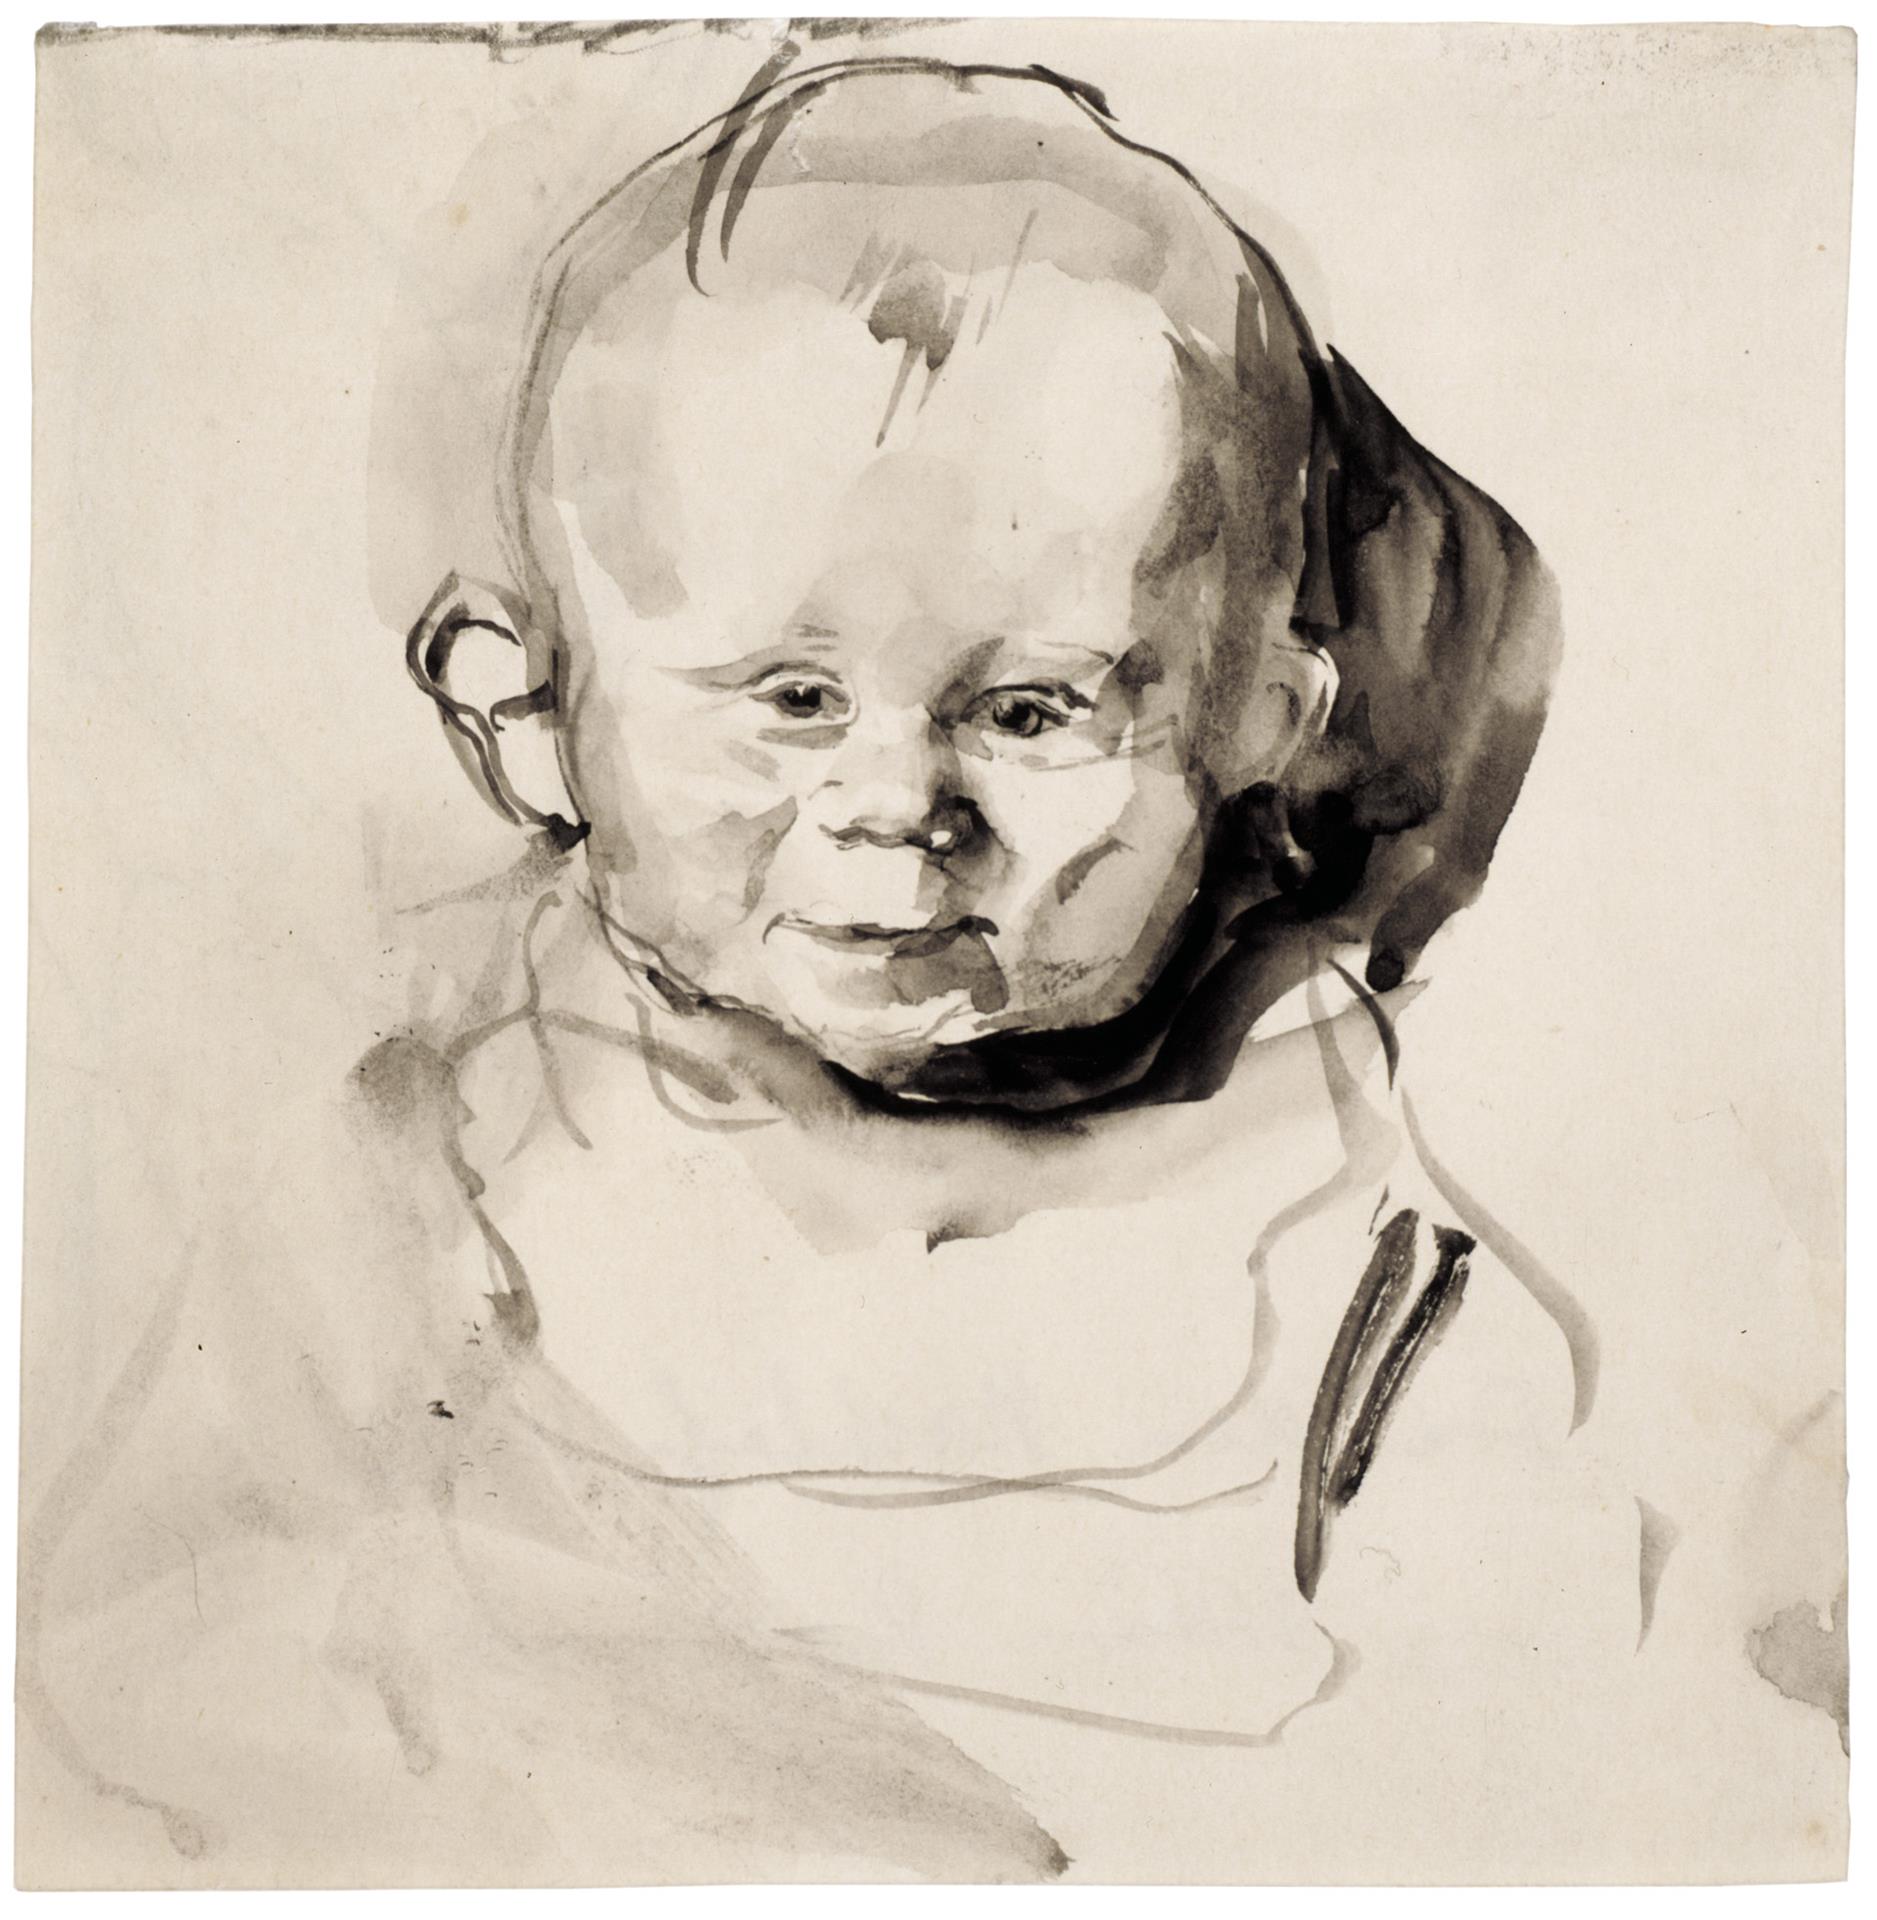 Käthe Kollwitz, Tête d’enfant de face (Hans Kollwitz), 1893, pinceau et encre grise, lavis, NT 72, Collection Kollwitz de Cologne © Käthe Kollwitz Museum Köln